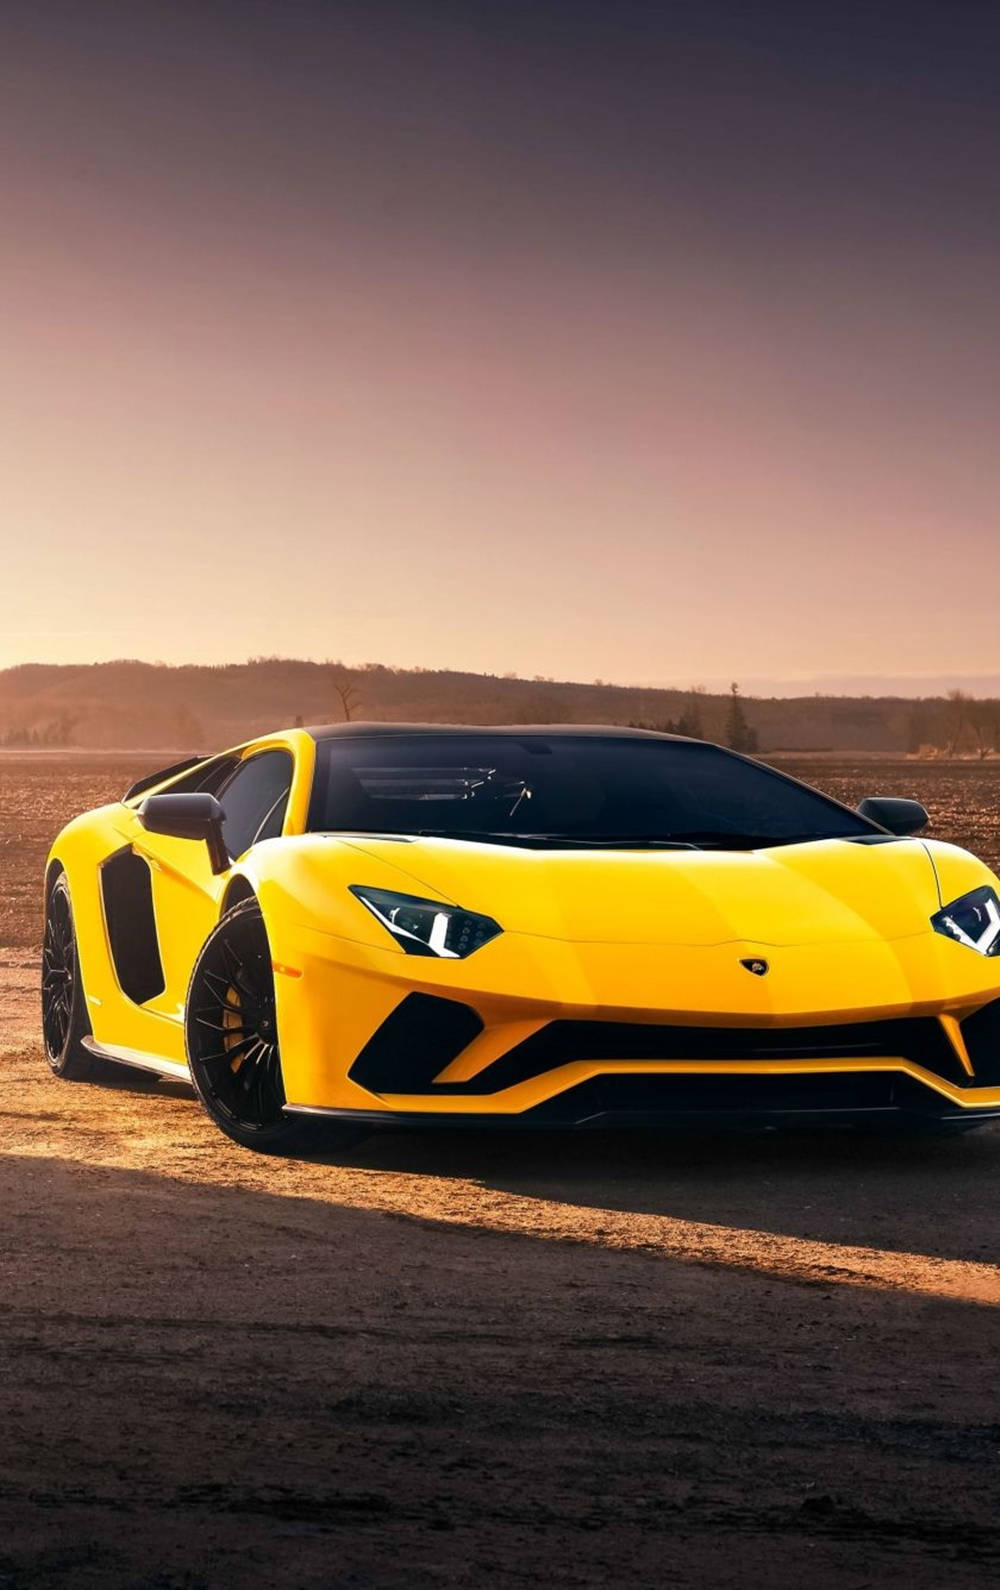 Lamborghiniiphone Gelb Ästhetik In Der Wüste Wallpaper